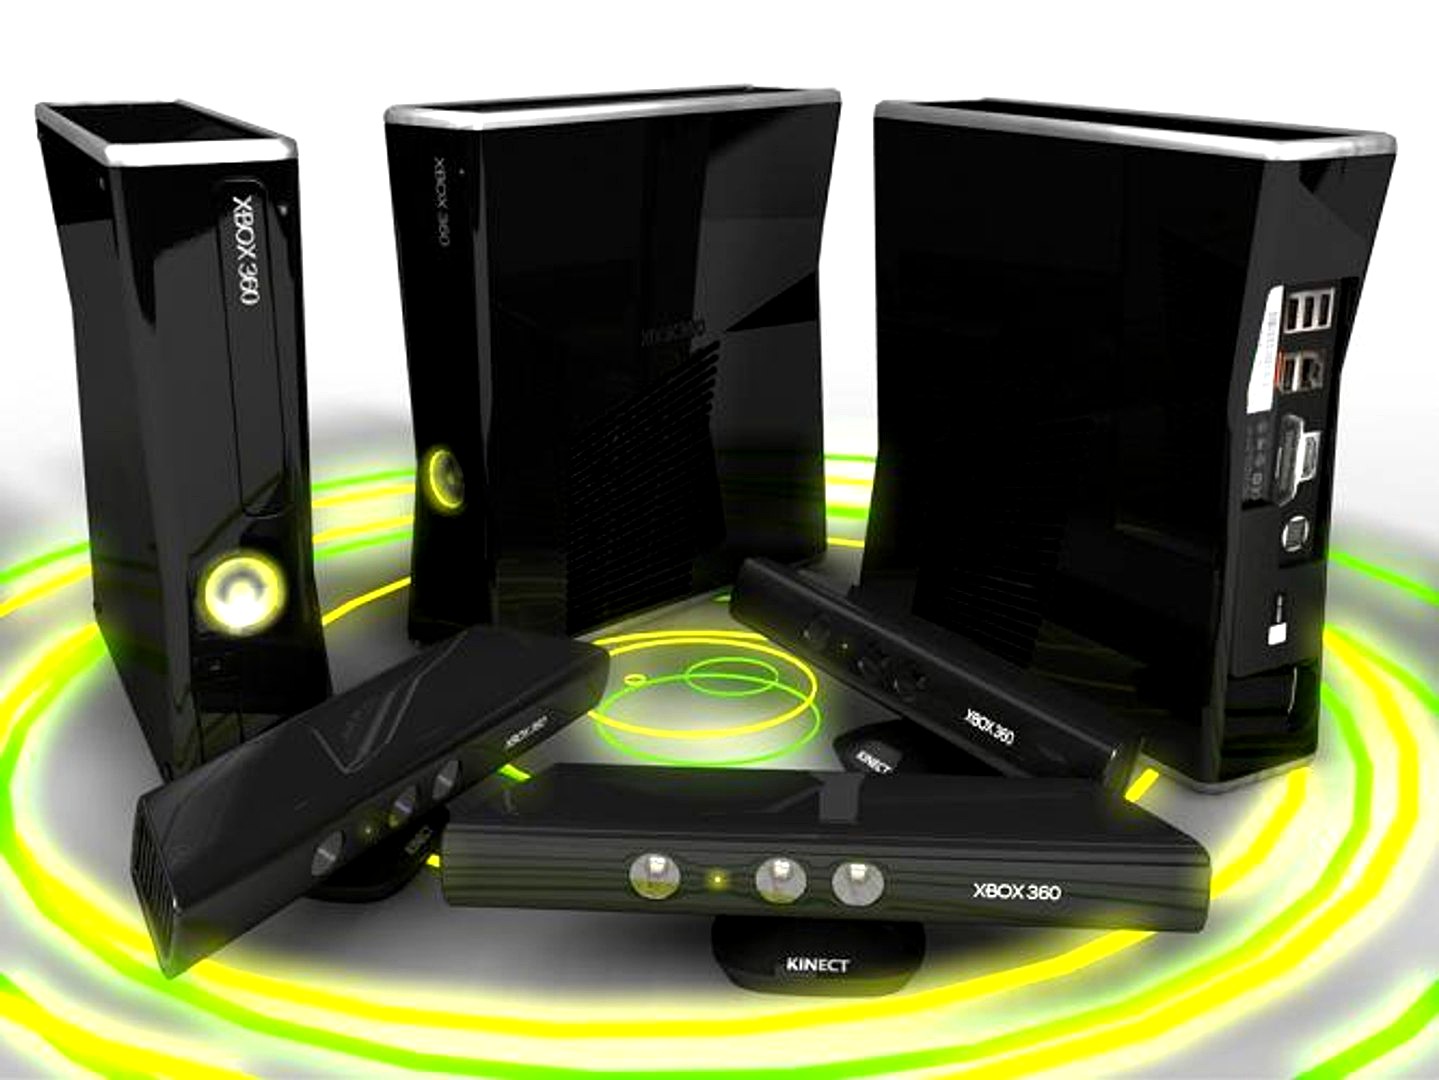 Xbox 360 S with Kinect Sensor